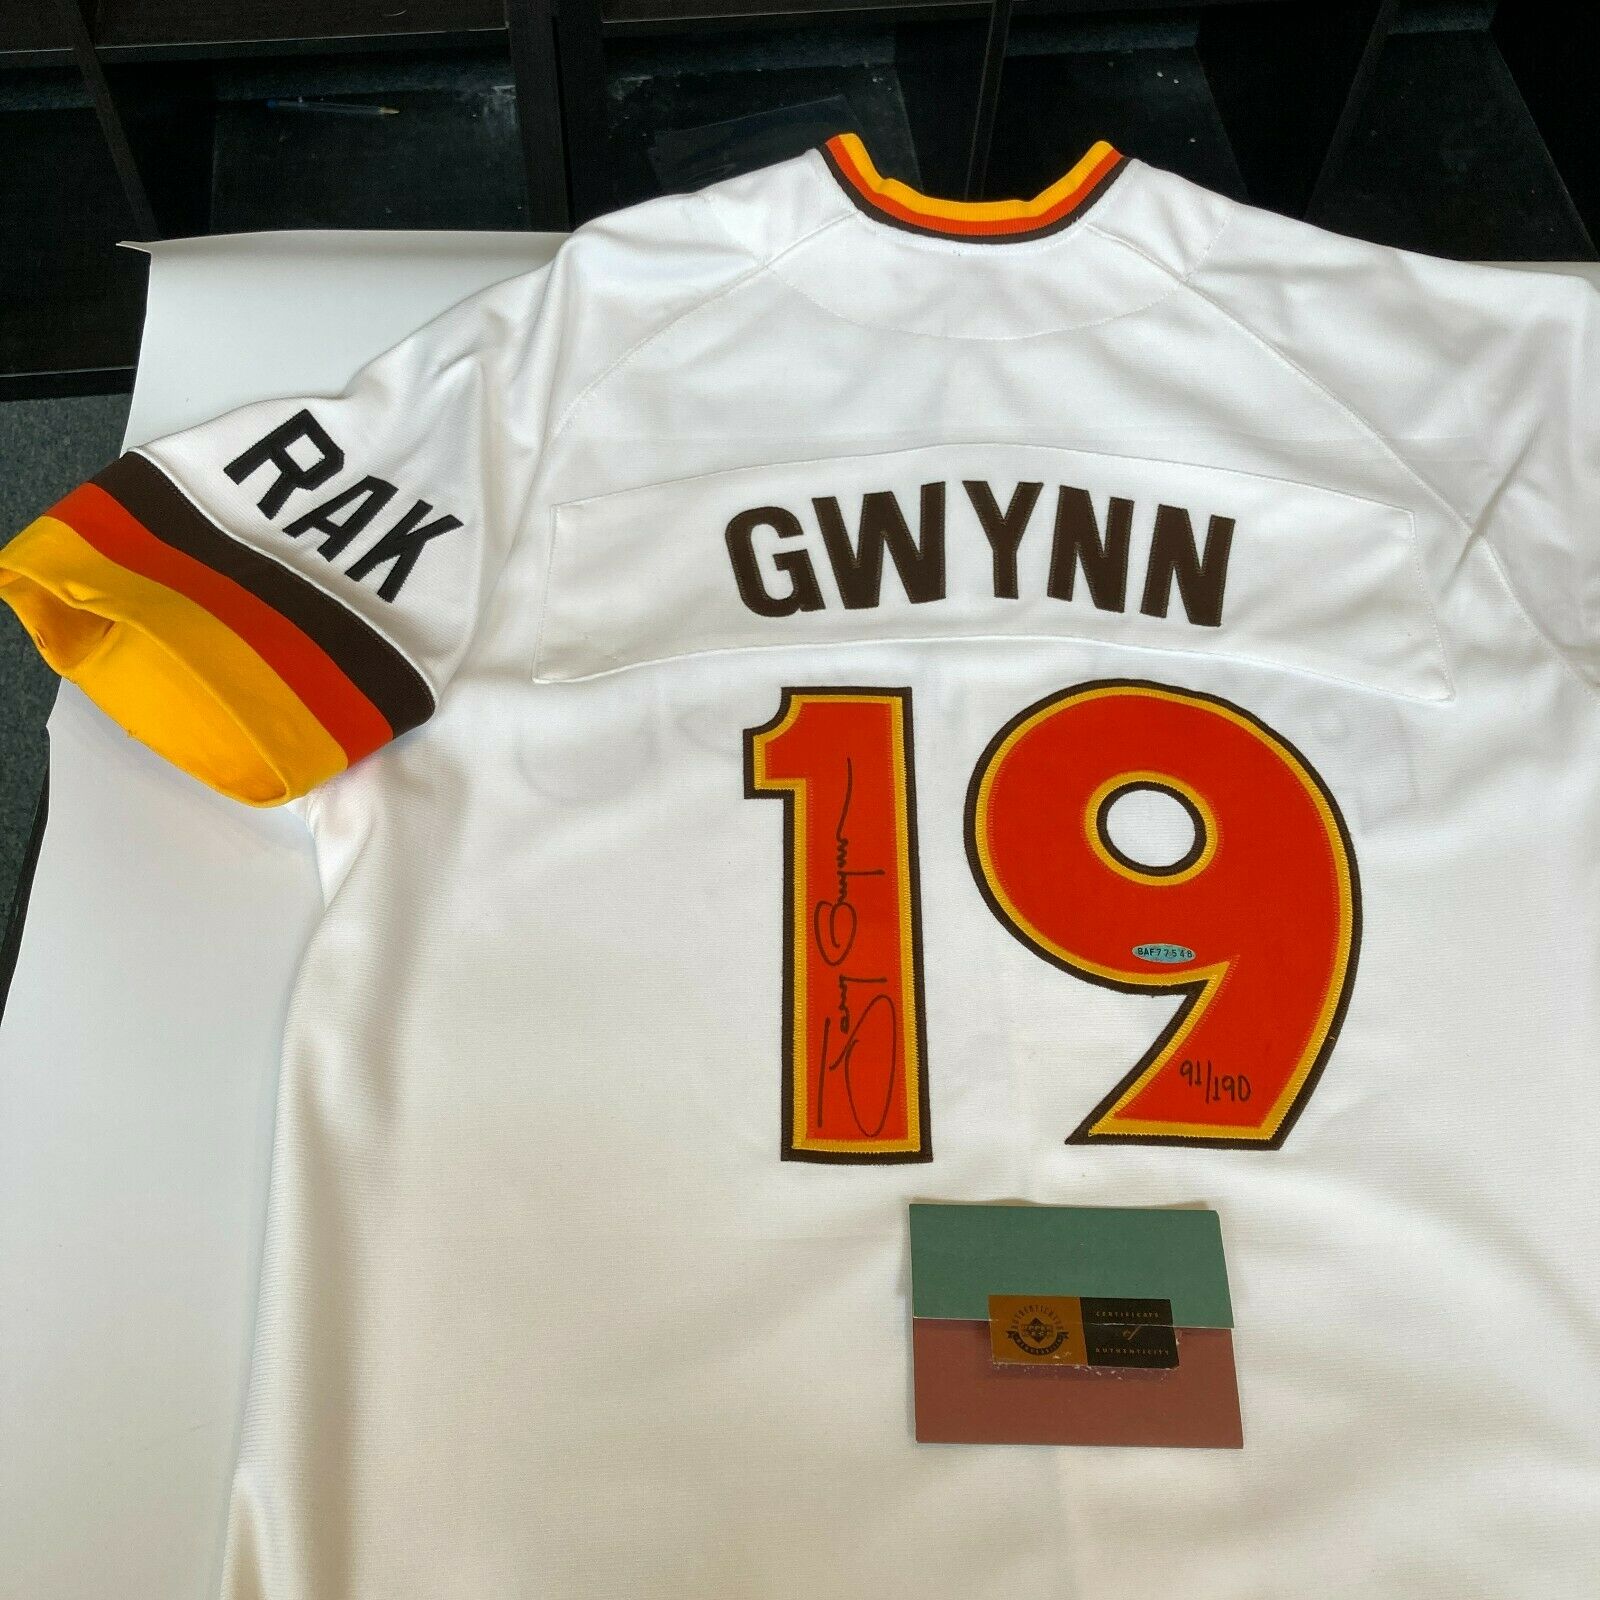 tony gwynn 1984 jersey